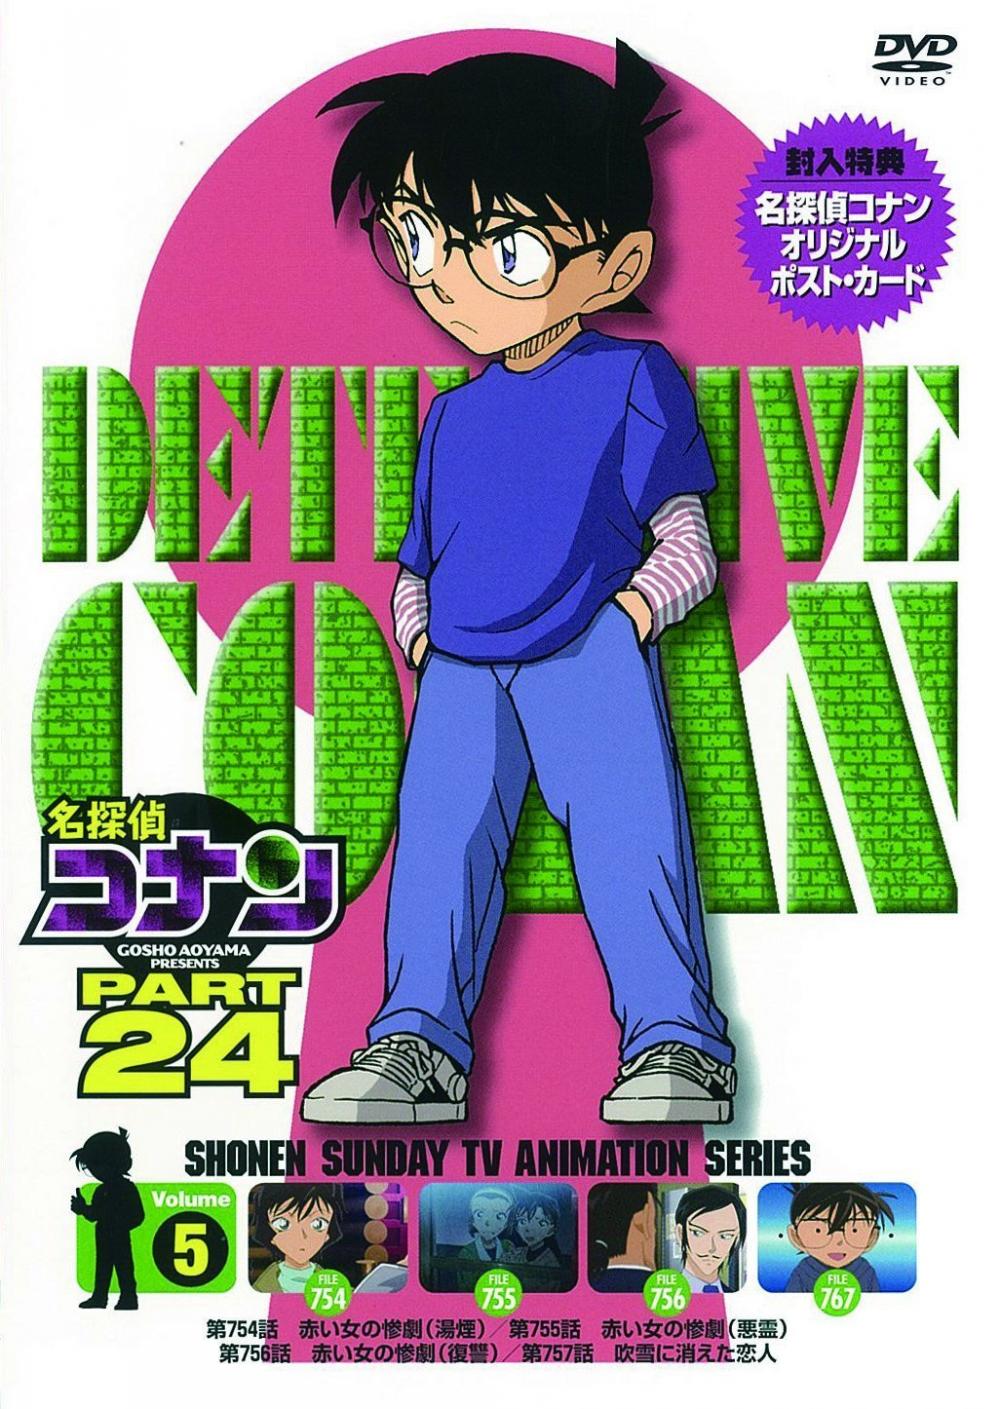 名探偵コナン PART24 Vol.5 [DVD]